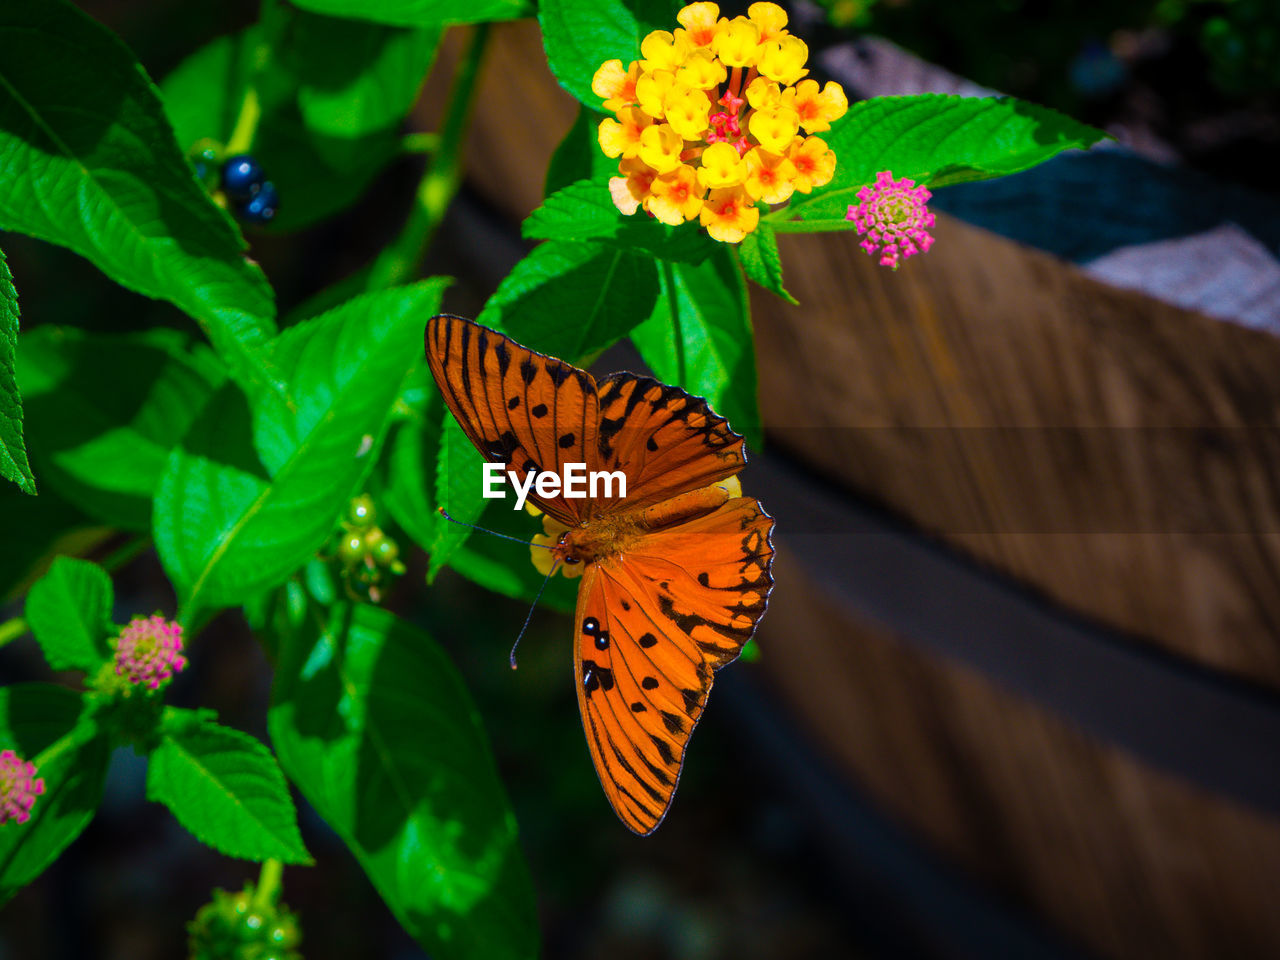 Orange butterfly on lantana camara at yard